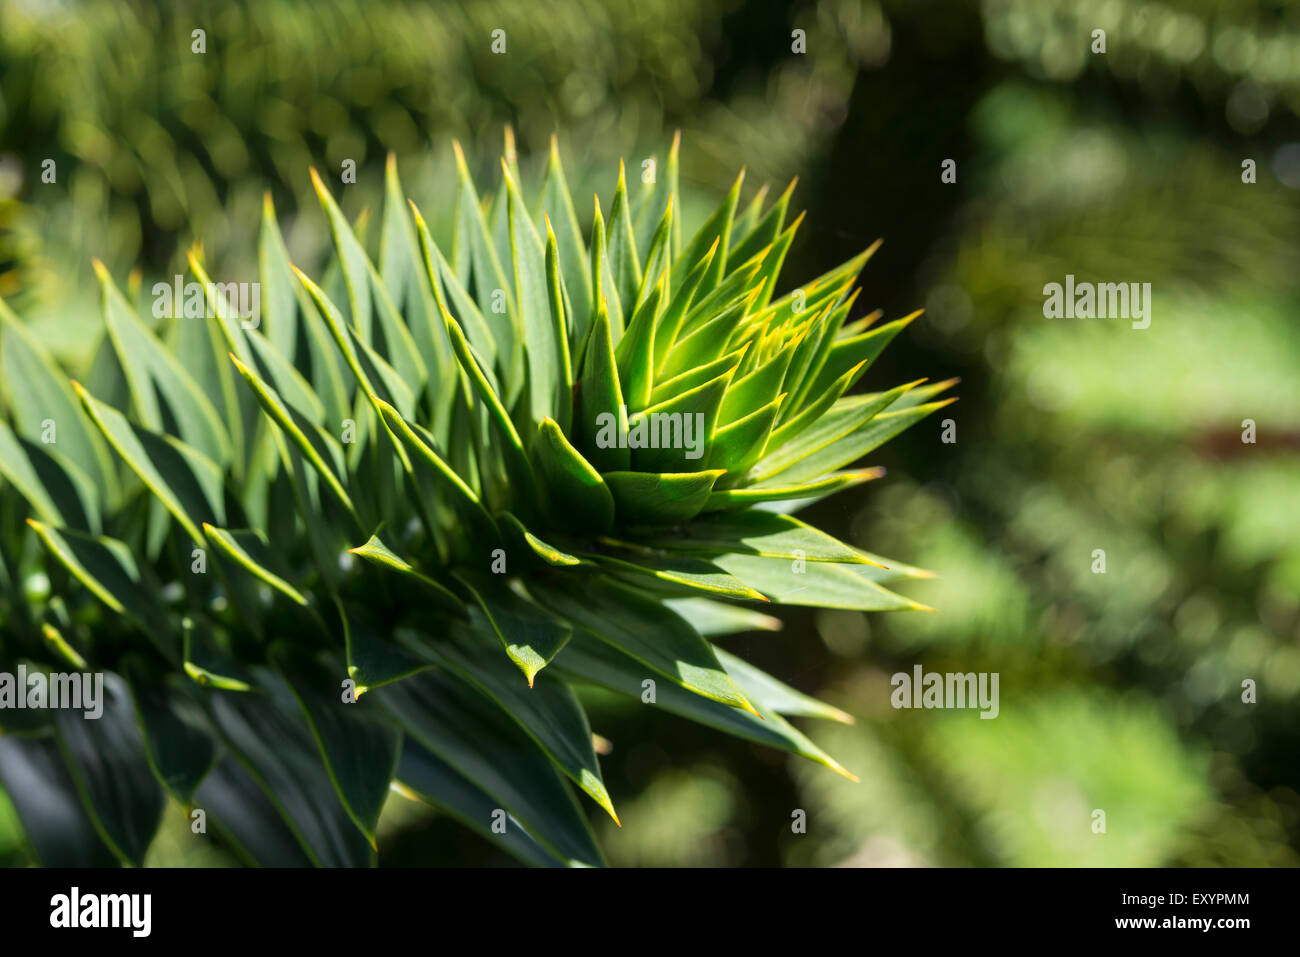 Cerca de los agudos follaje de un pehuén (Araucaria araucana). Foto de stock